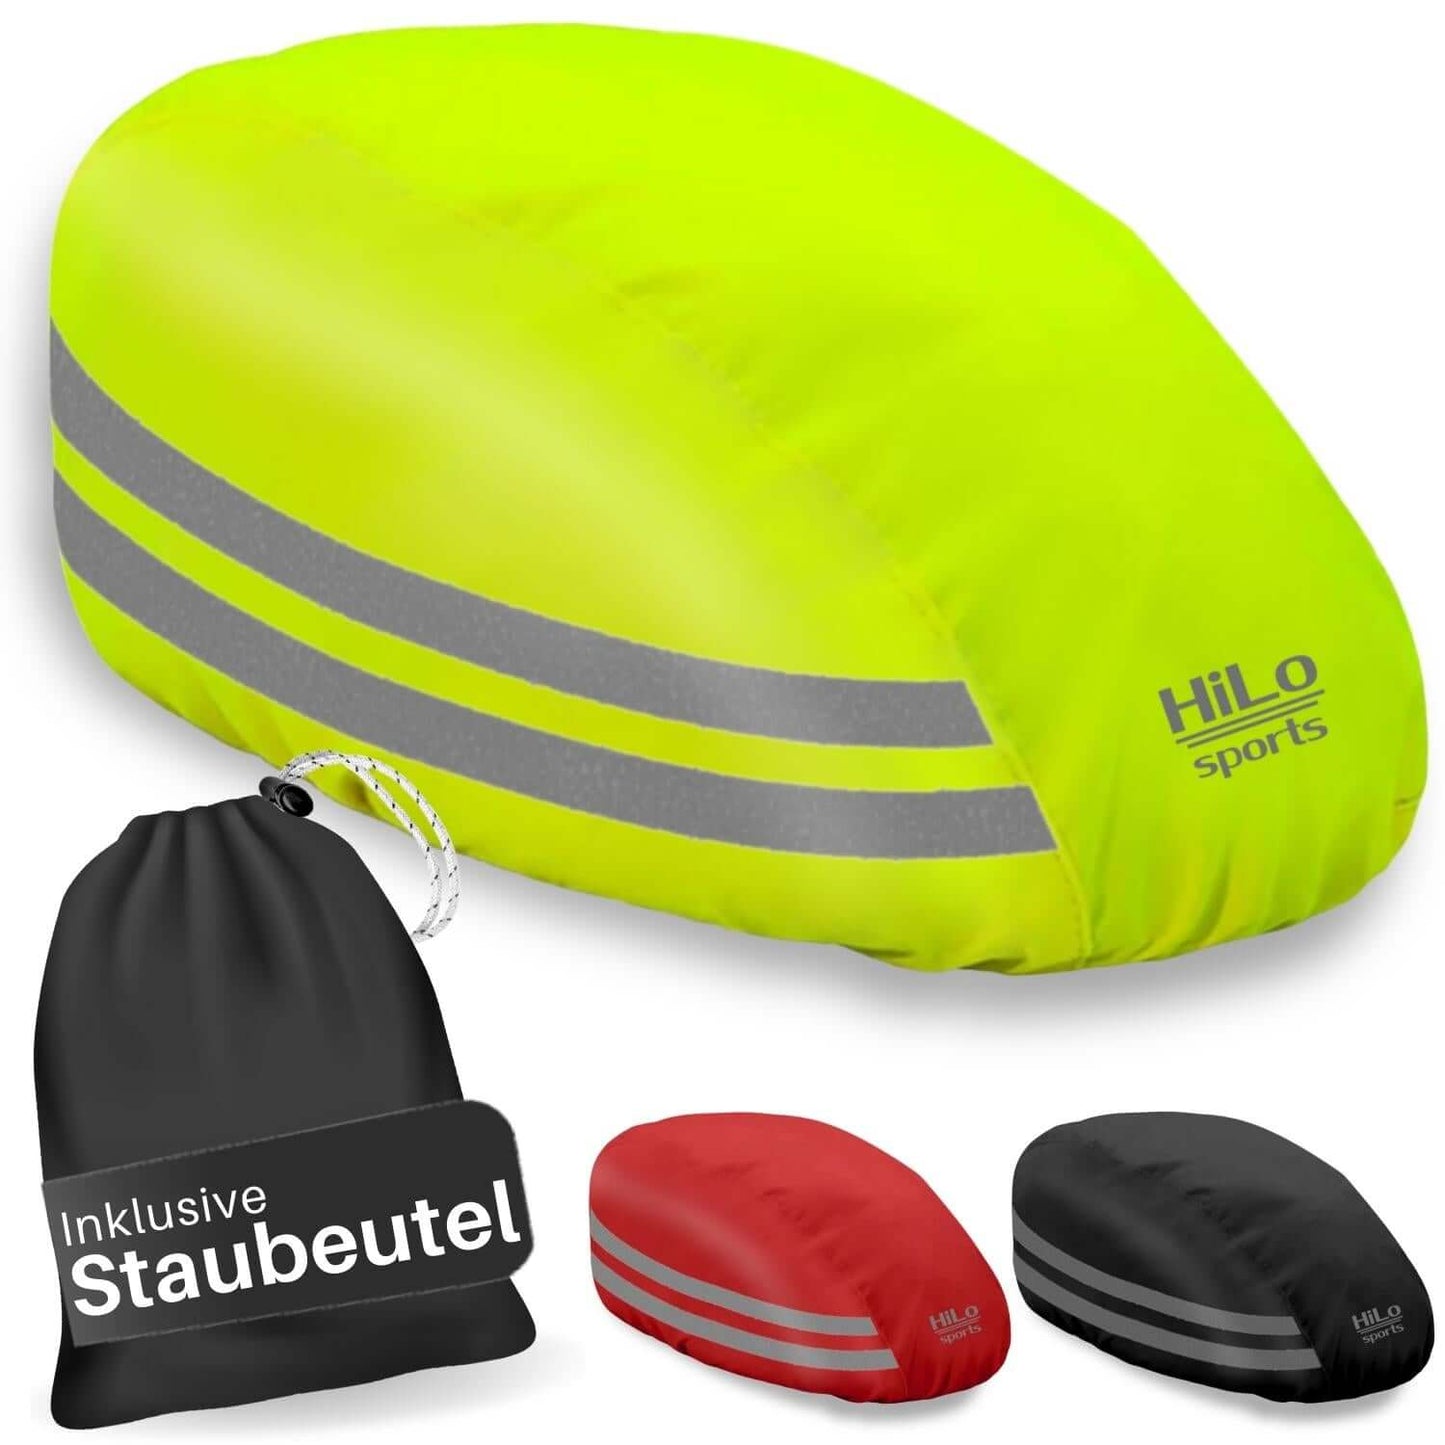    helmbezugwasserdicht  1500 × 1500 Pixel  Der Fahrrad Helm Regenschutz in neon-gelb hält deinen Kopf trocken und warm